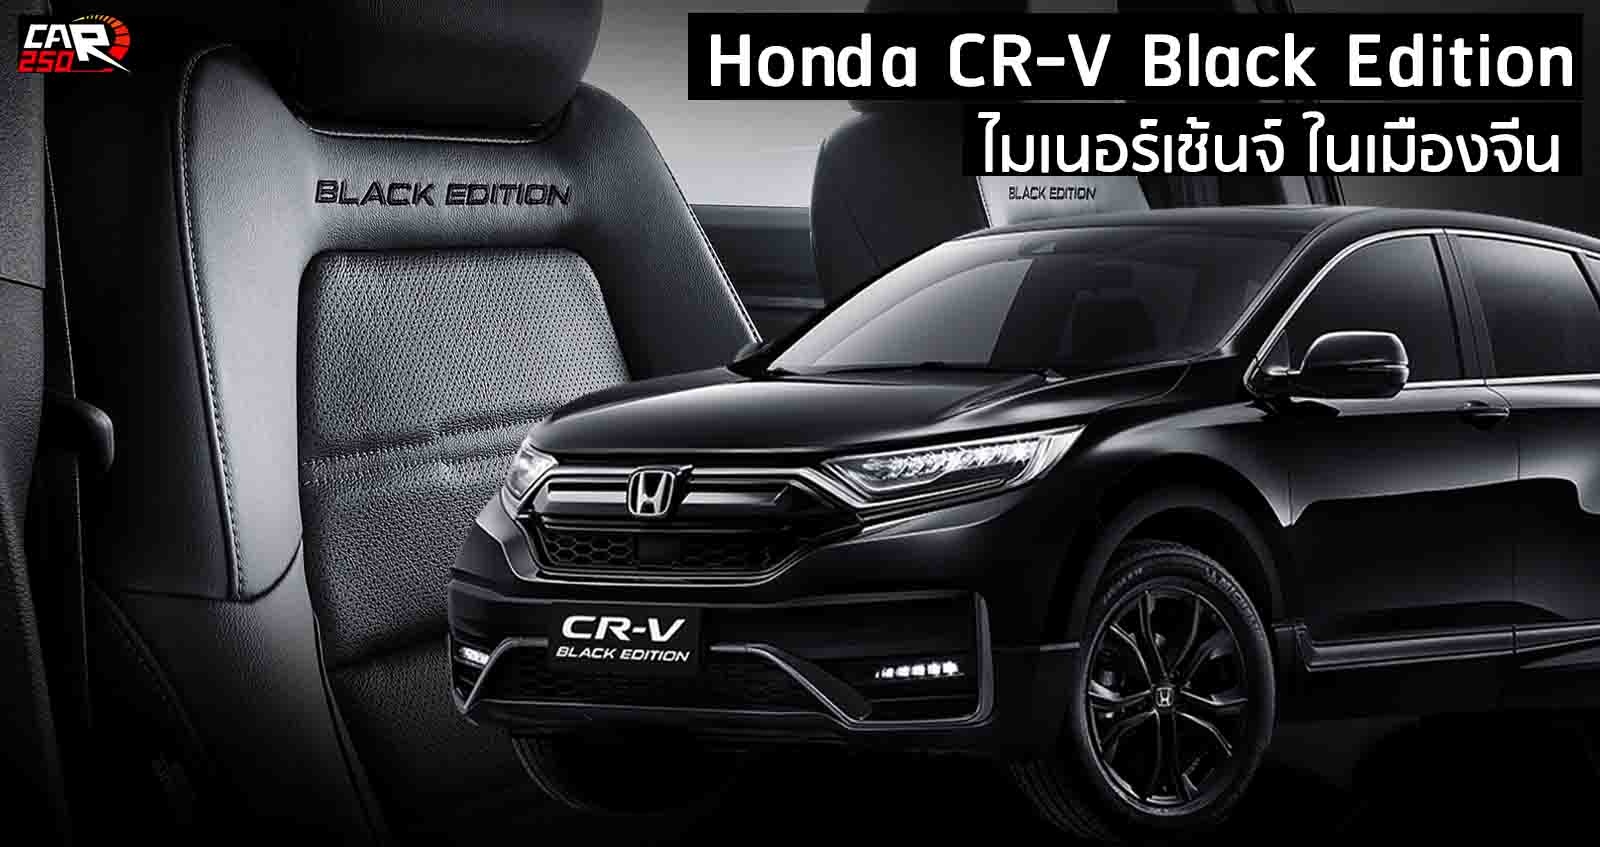 ภาพคันจริง Honda CR-V Black Edition ไมเนอร์เช้นจ์ในจีน ราคา 974,000 – 1,113,000 บาท